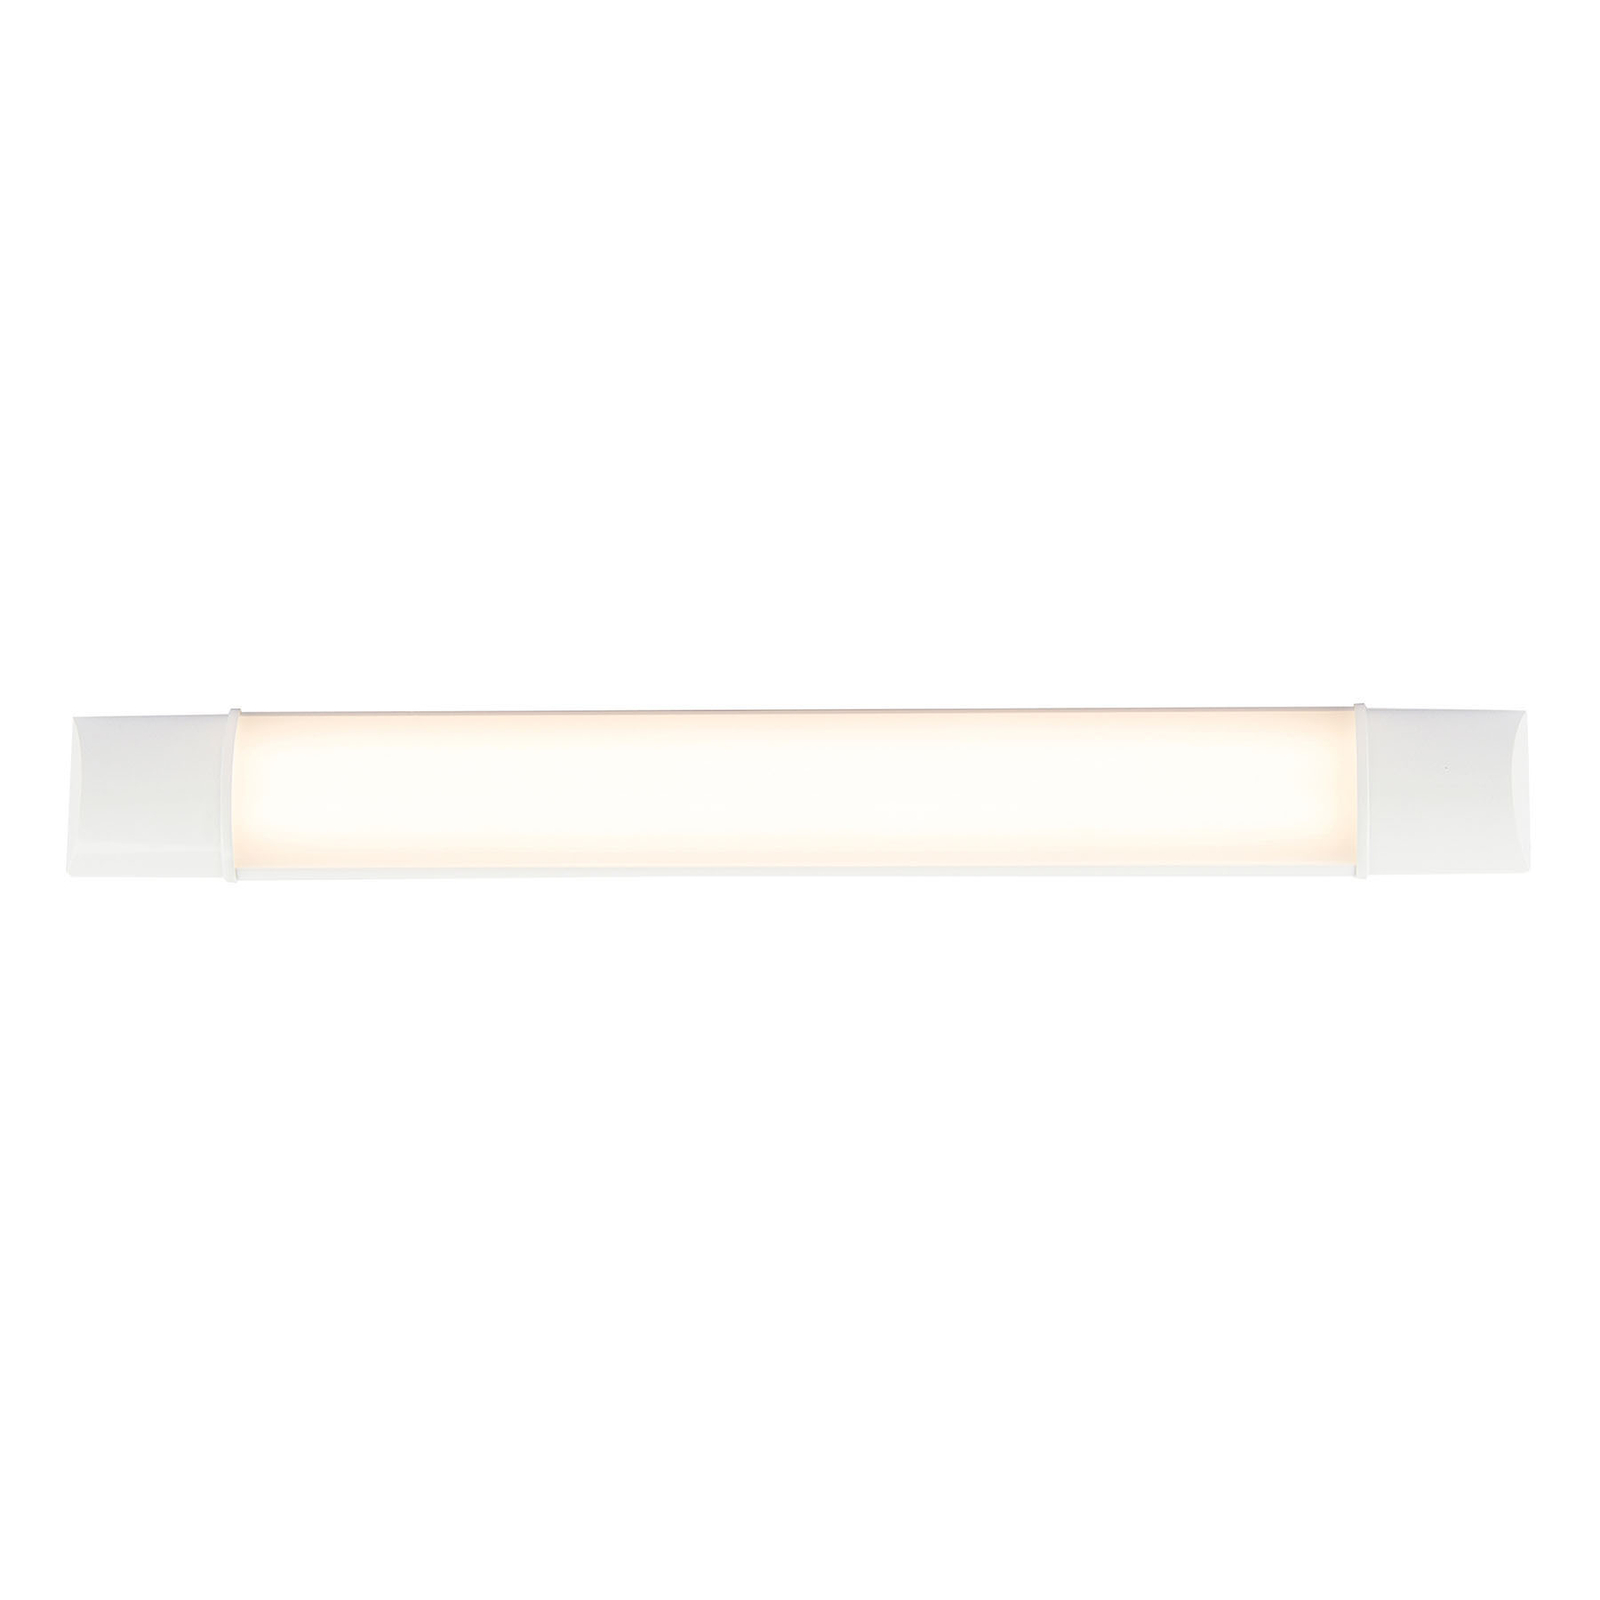 LED-Unterbauleuchte Obara, IP20, 60 cm lang